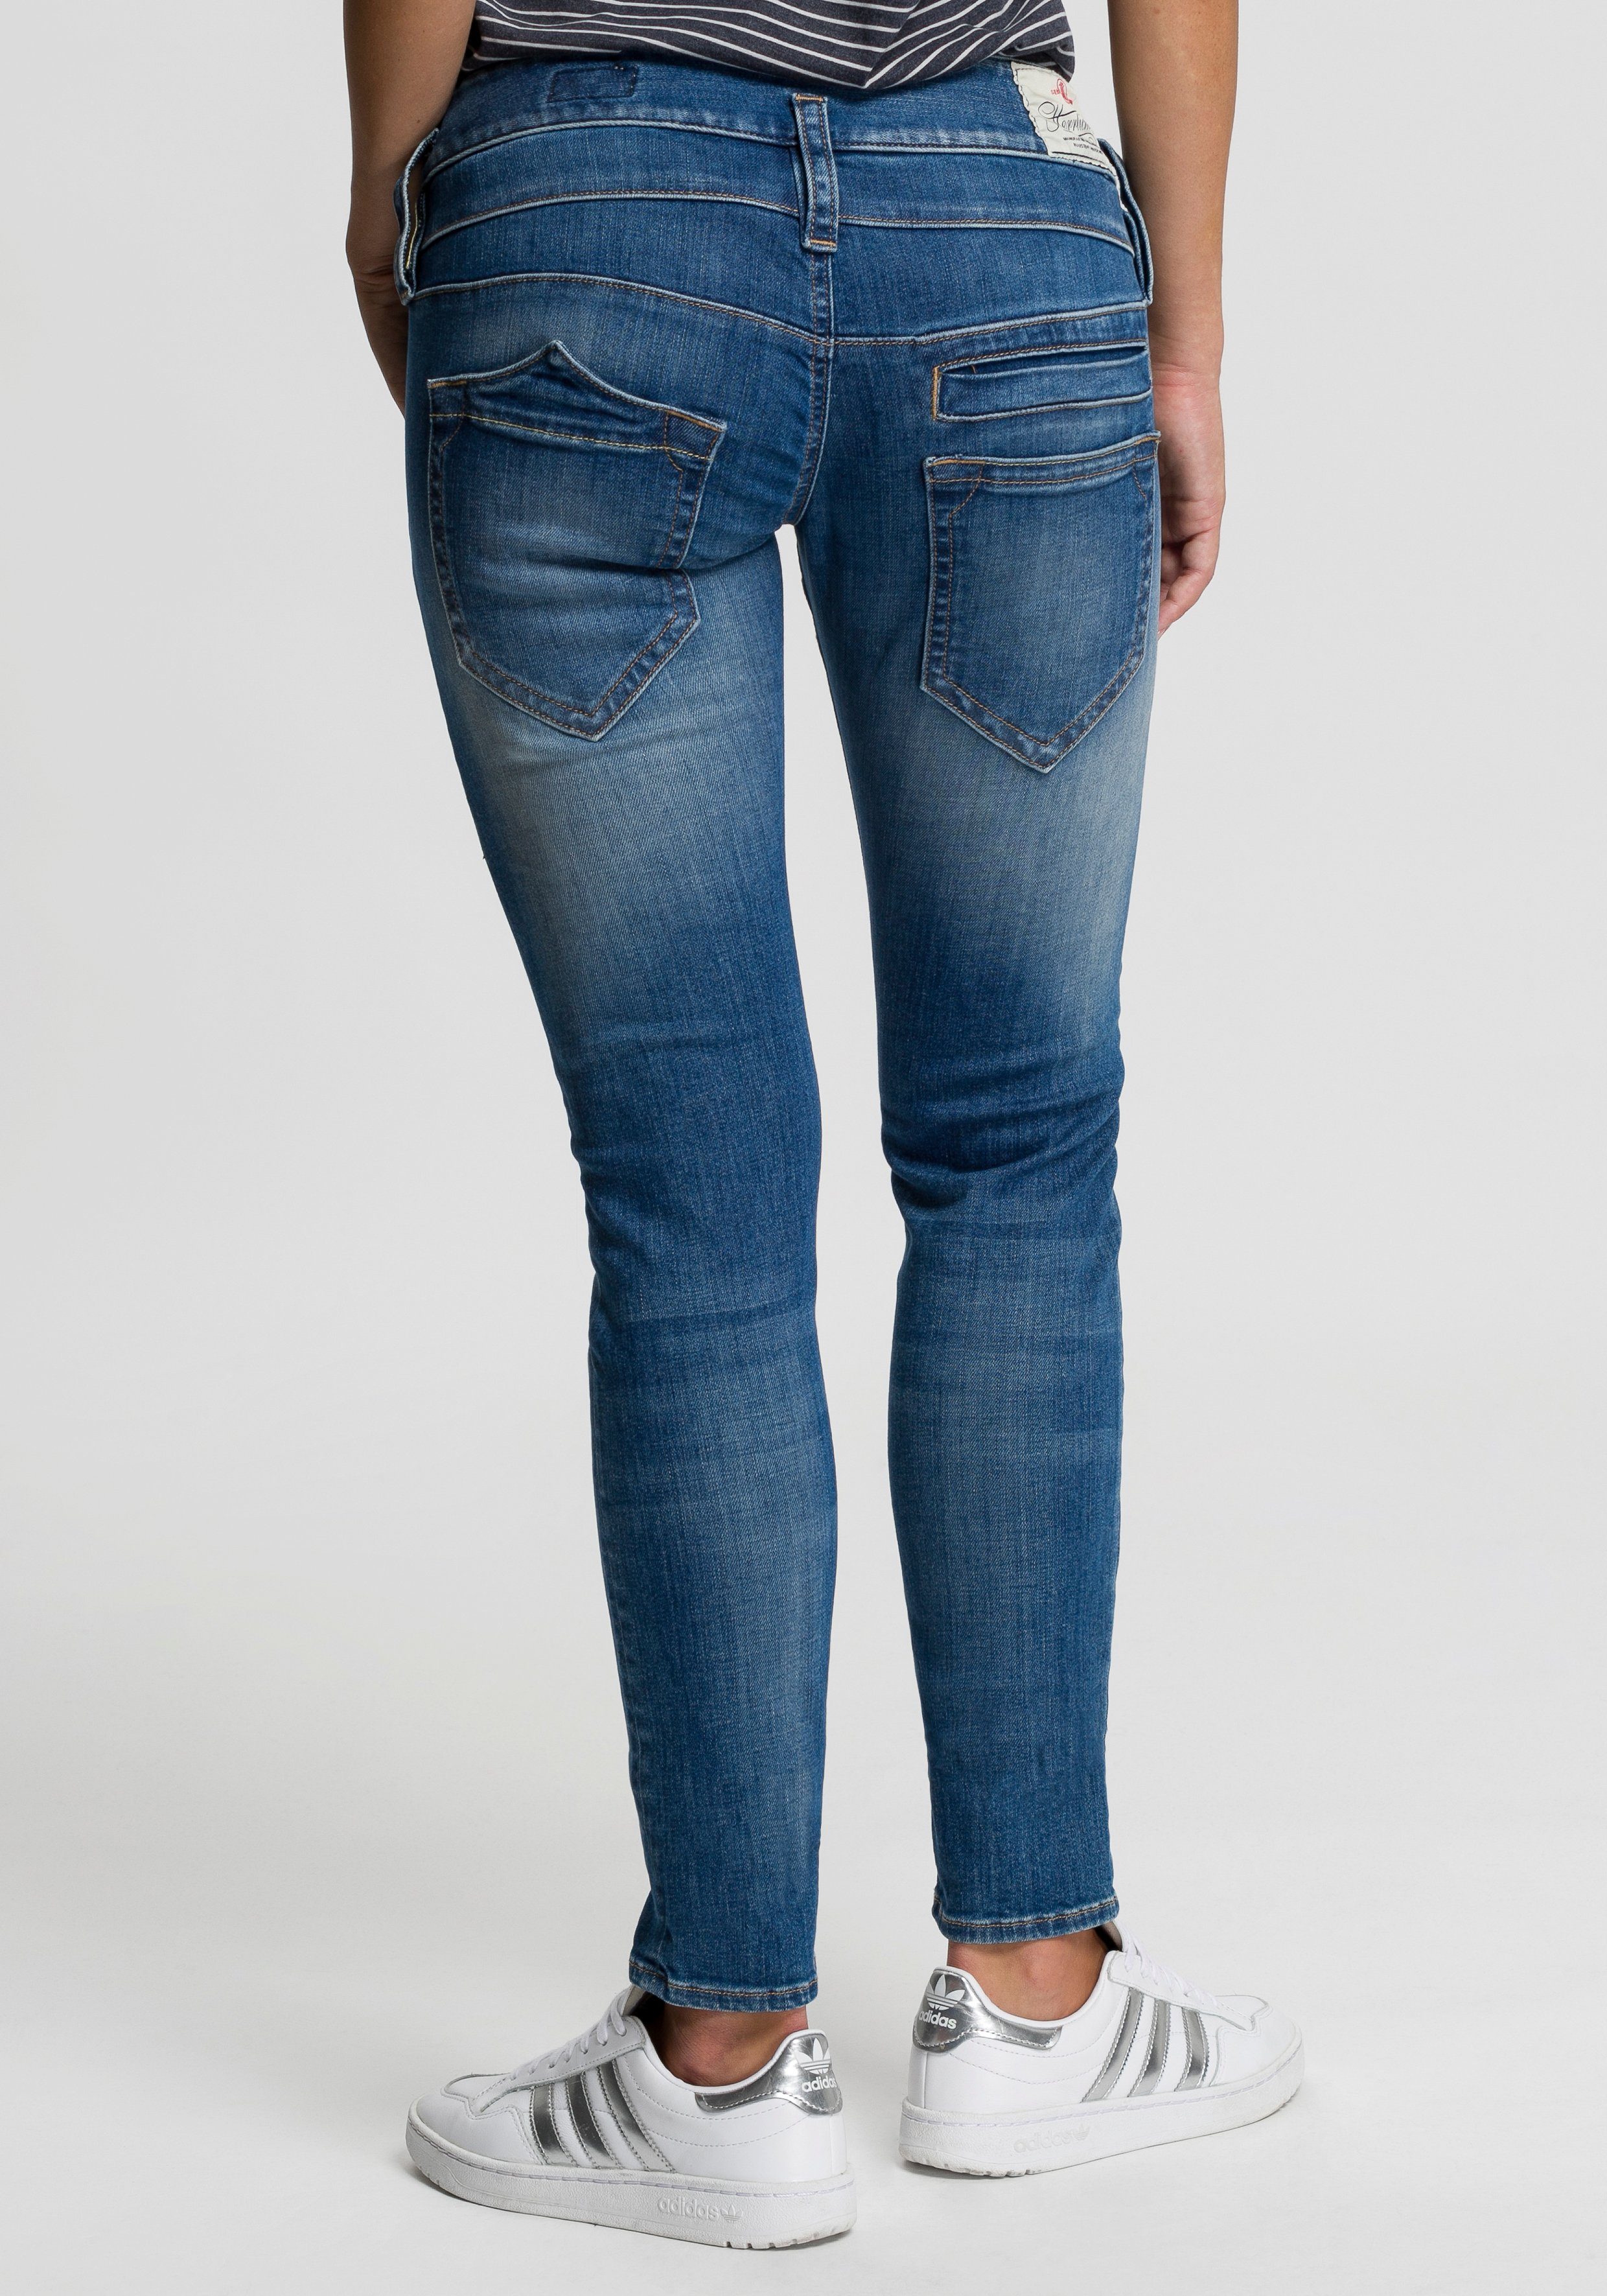 Damen Jeans mit Logo online kaufen | OTTO